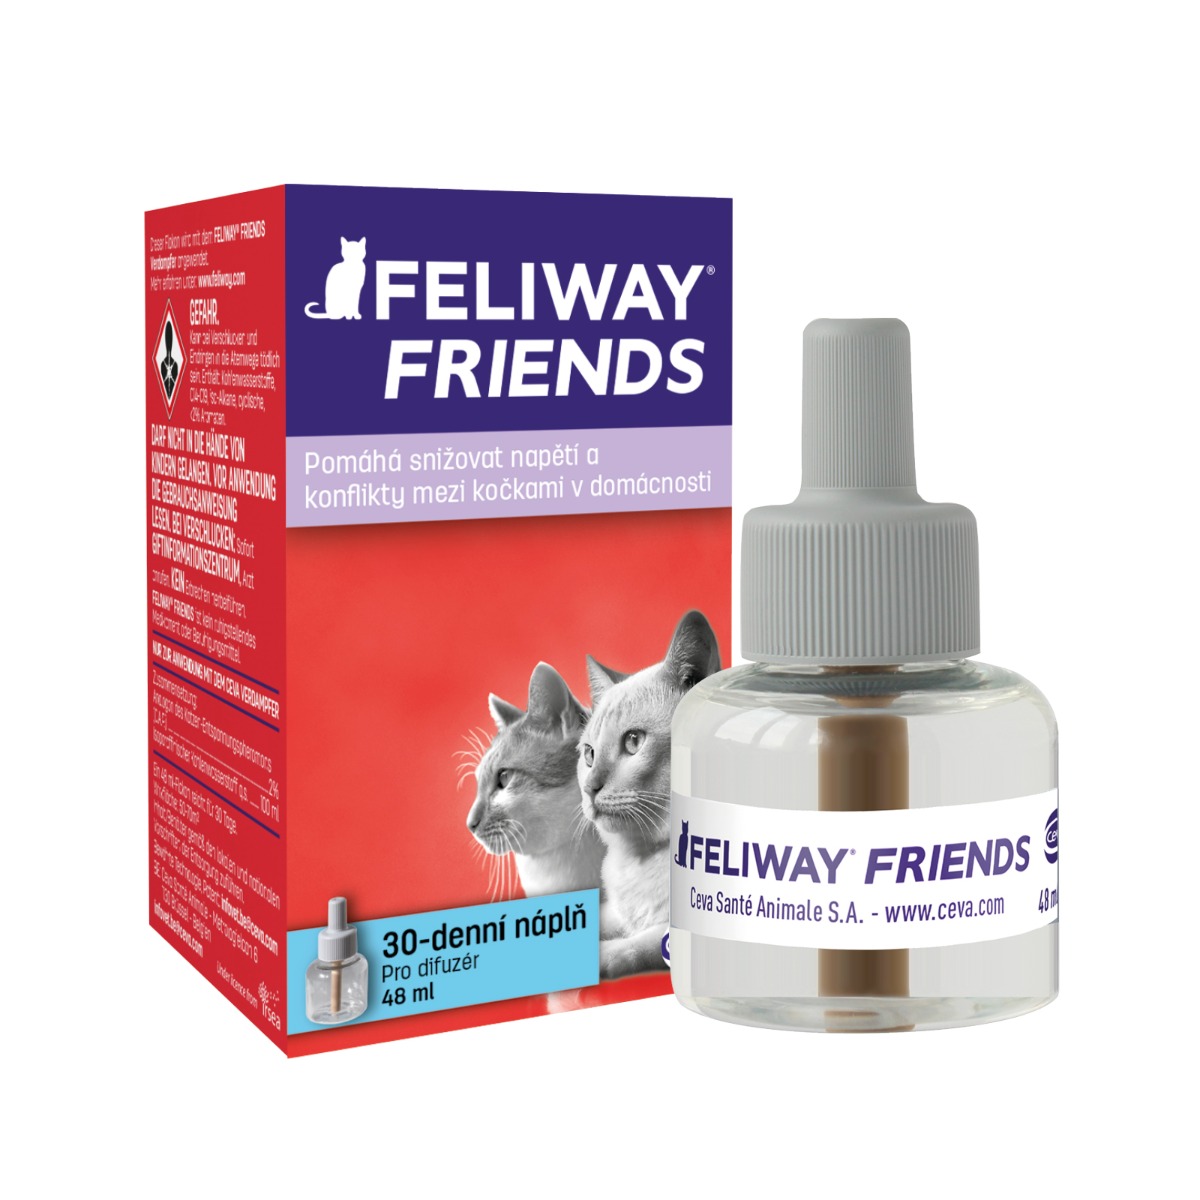 Feliway Friends náhradní náplň pro kočky 48 ml Feliway